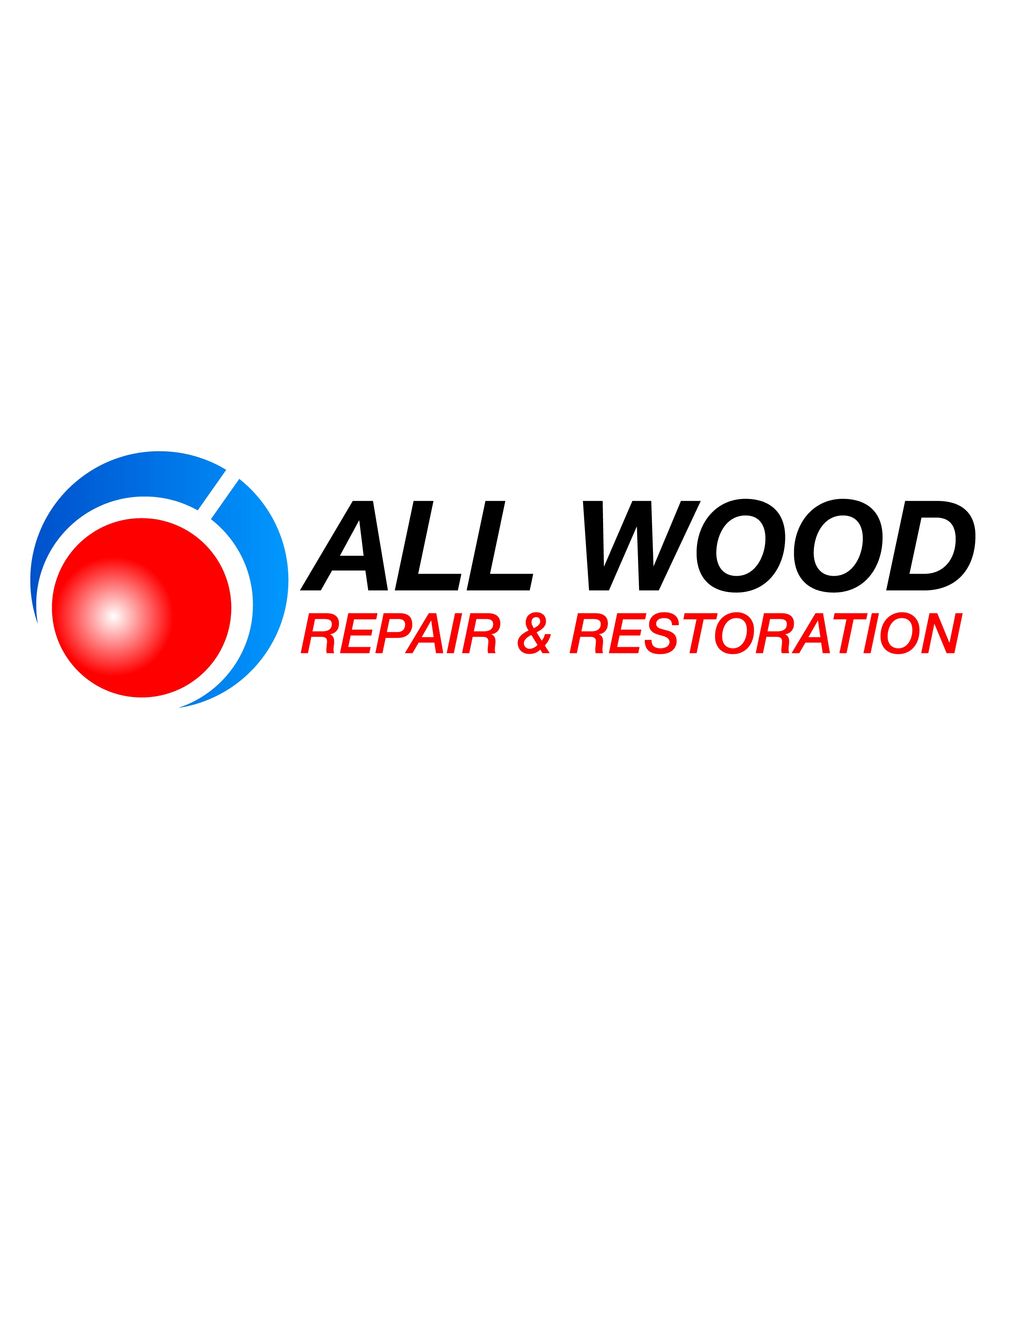 All Wood Repair & Restoration